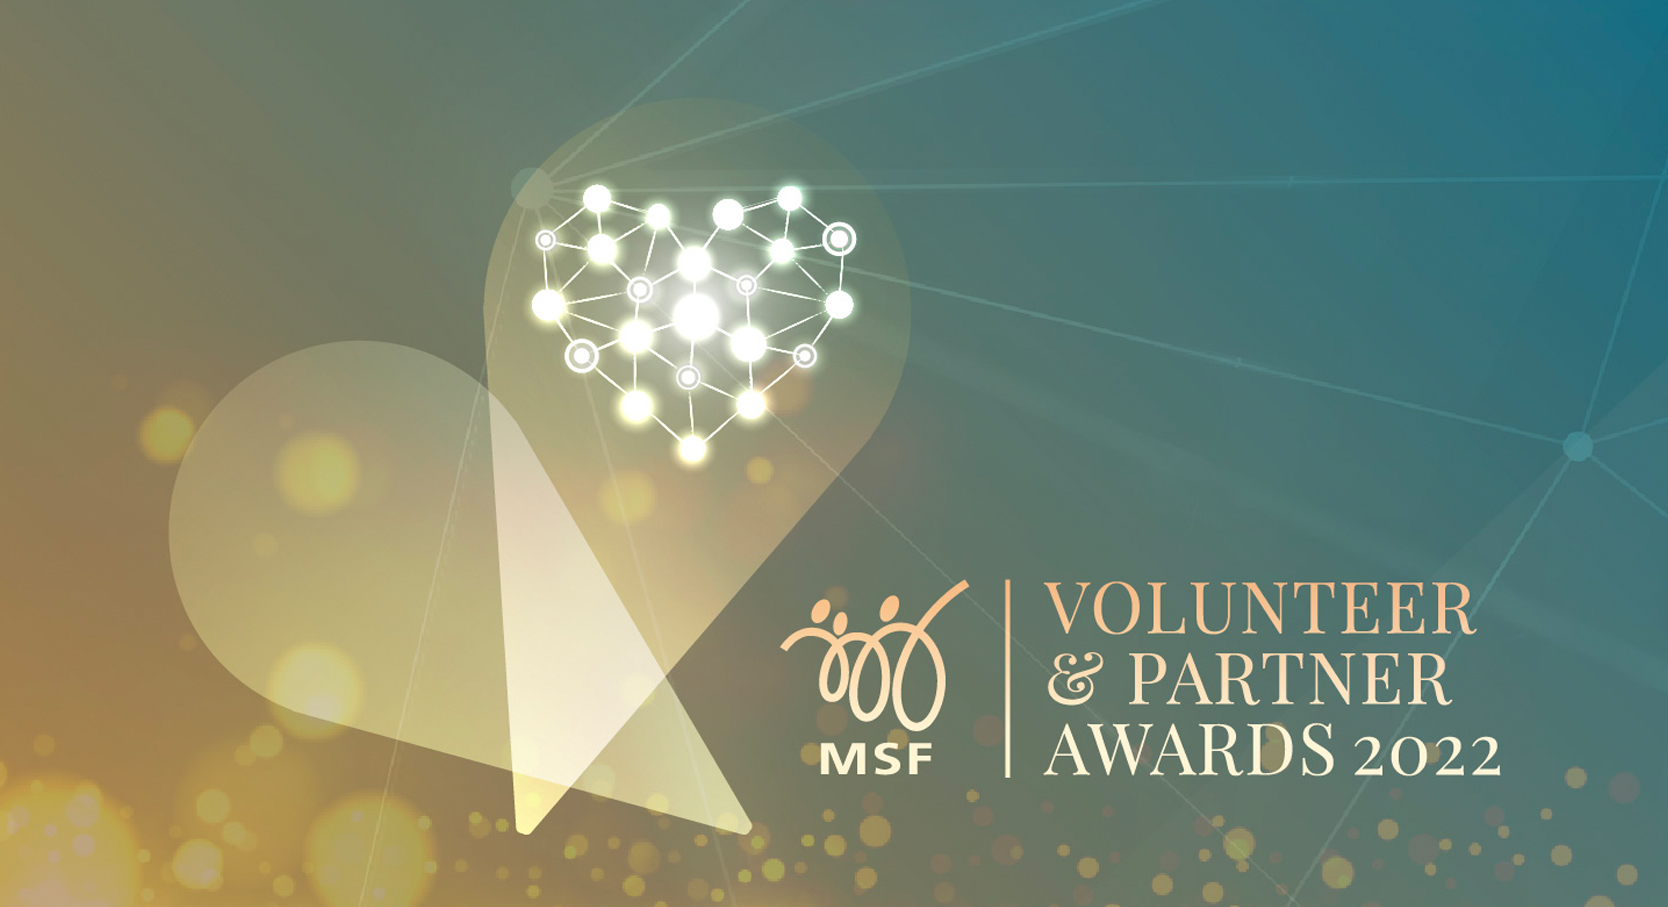 MSF Volunteer & Partner Awards 2022